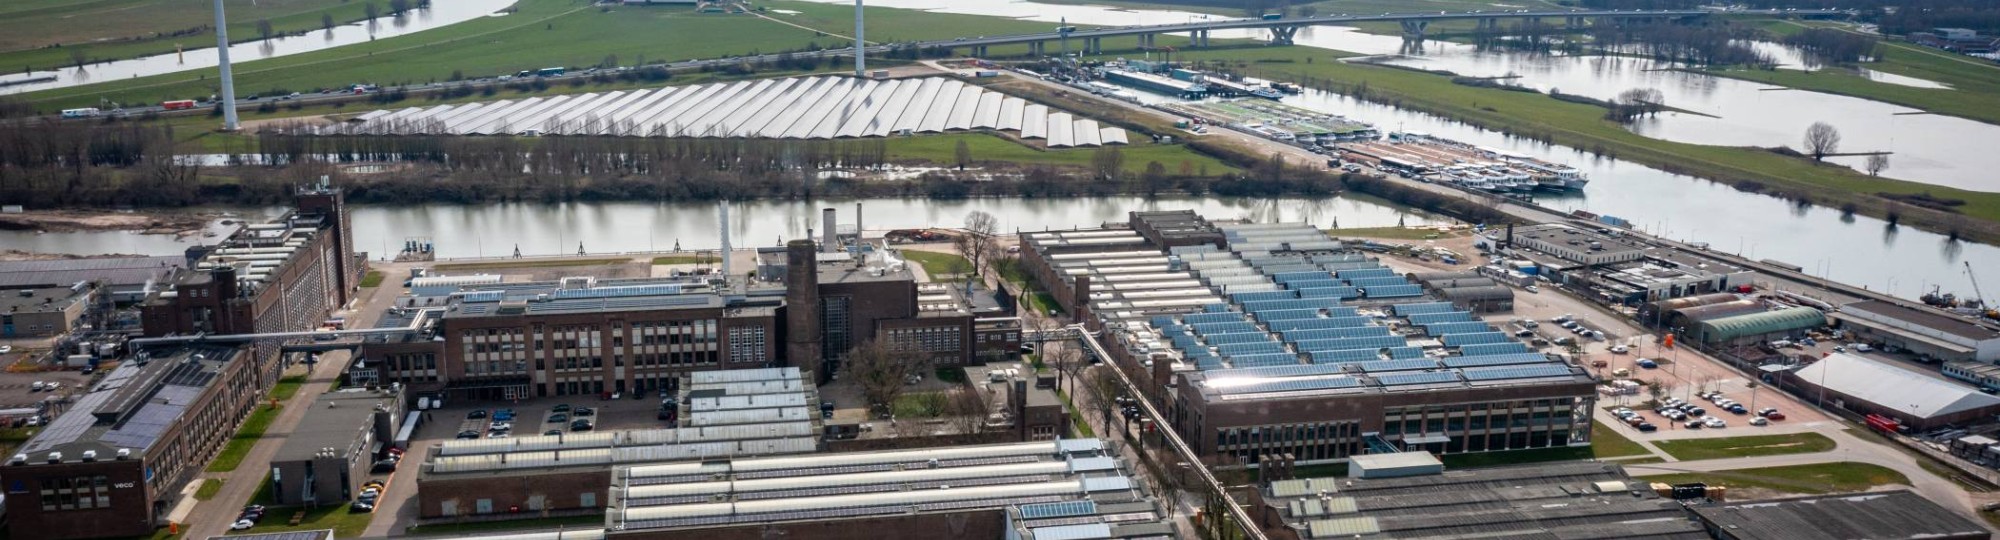 Luchtfoto van het Industriepark Kleefse Waard (IPKW) met zonnepanelen. De Academie Engineering en Automotive werkt hier aan diverse projecten waaronder projecten met waterstof.